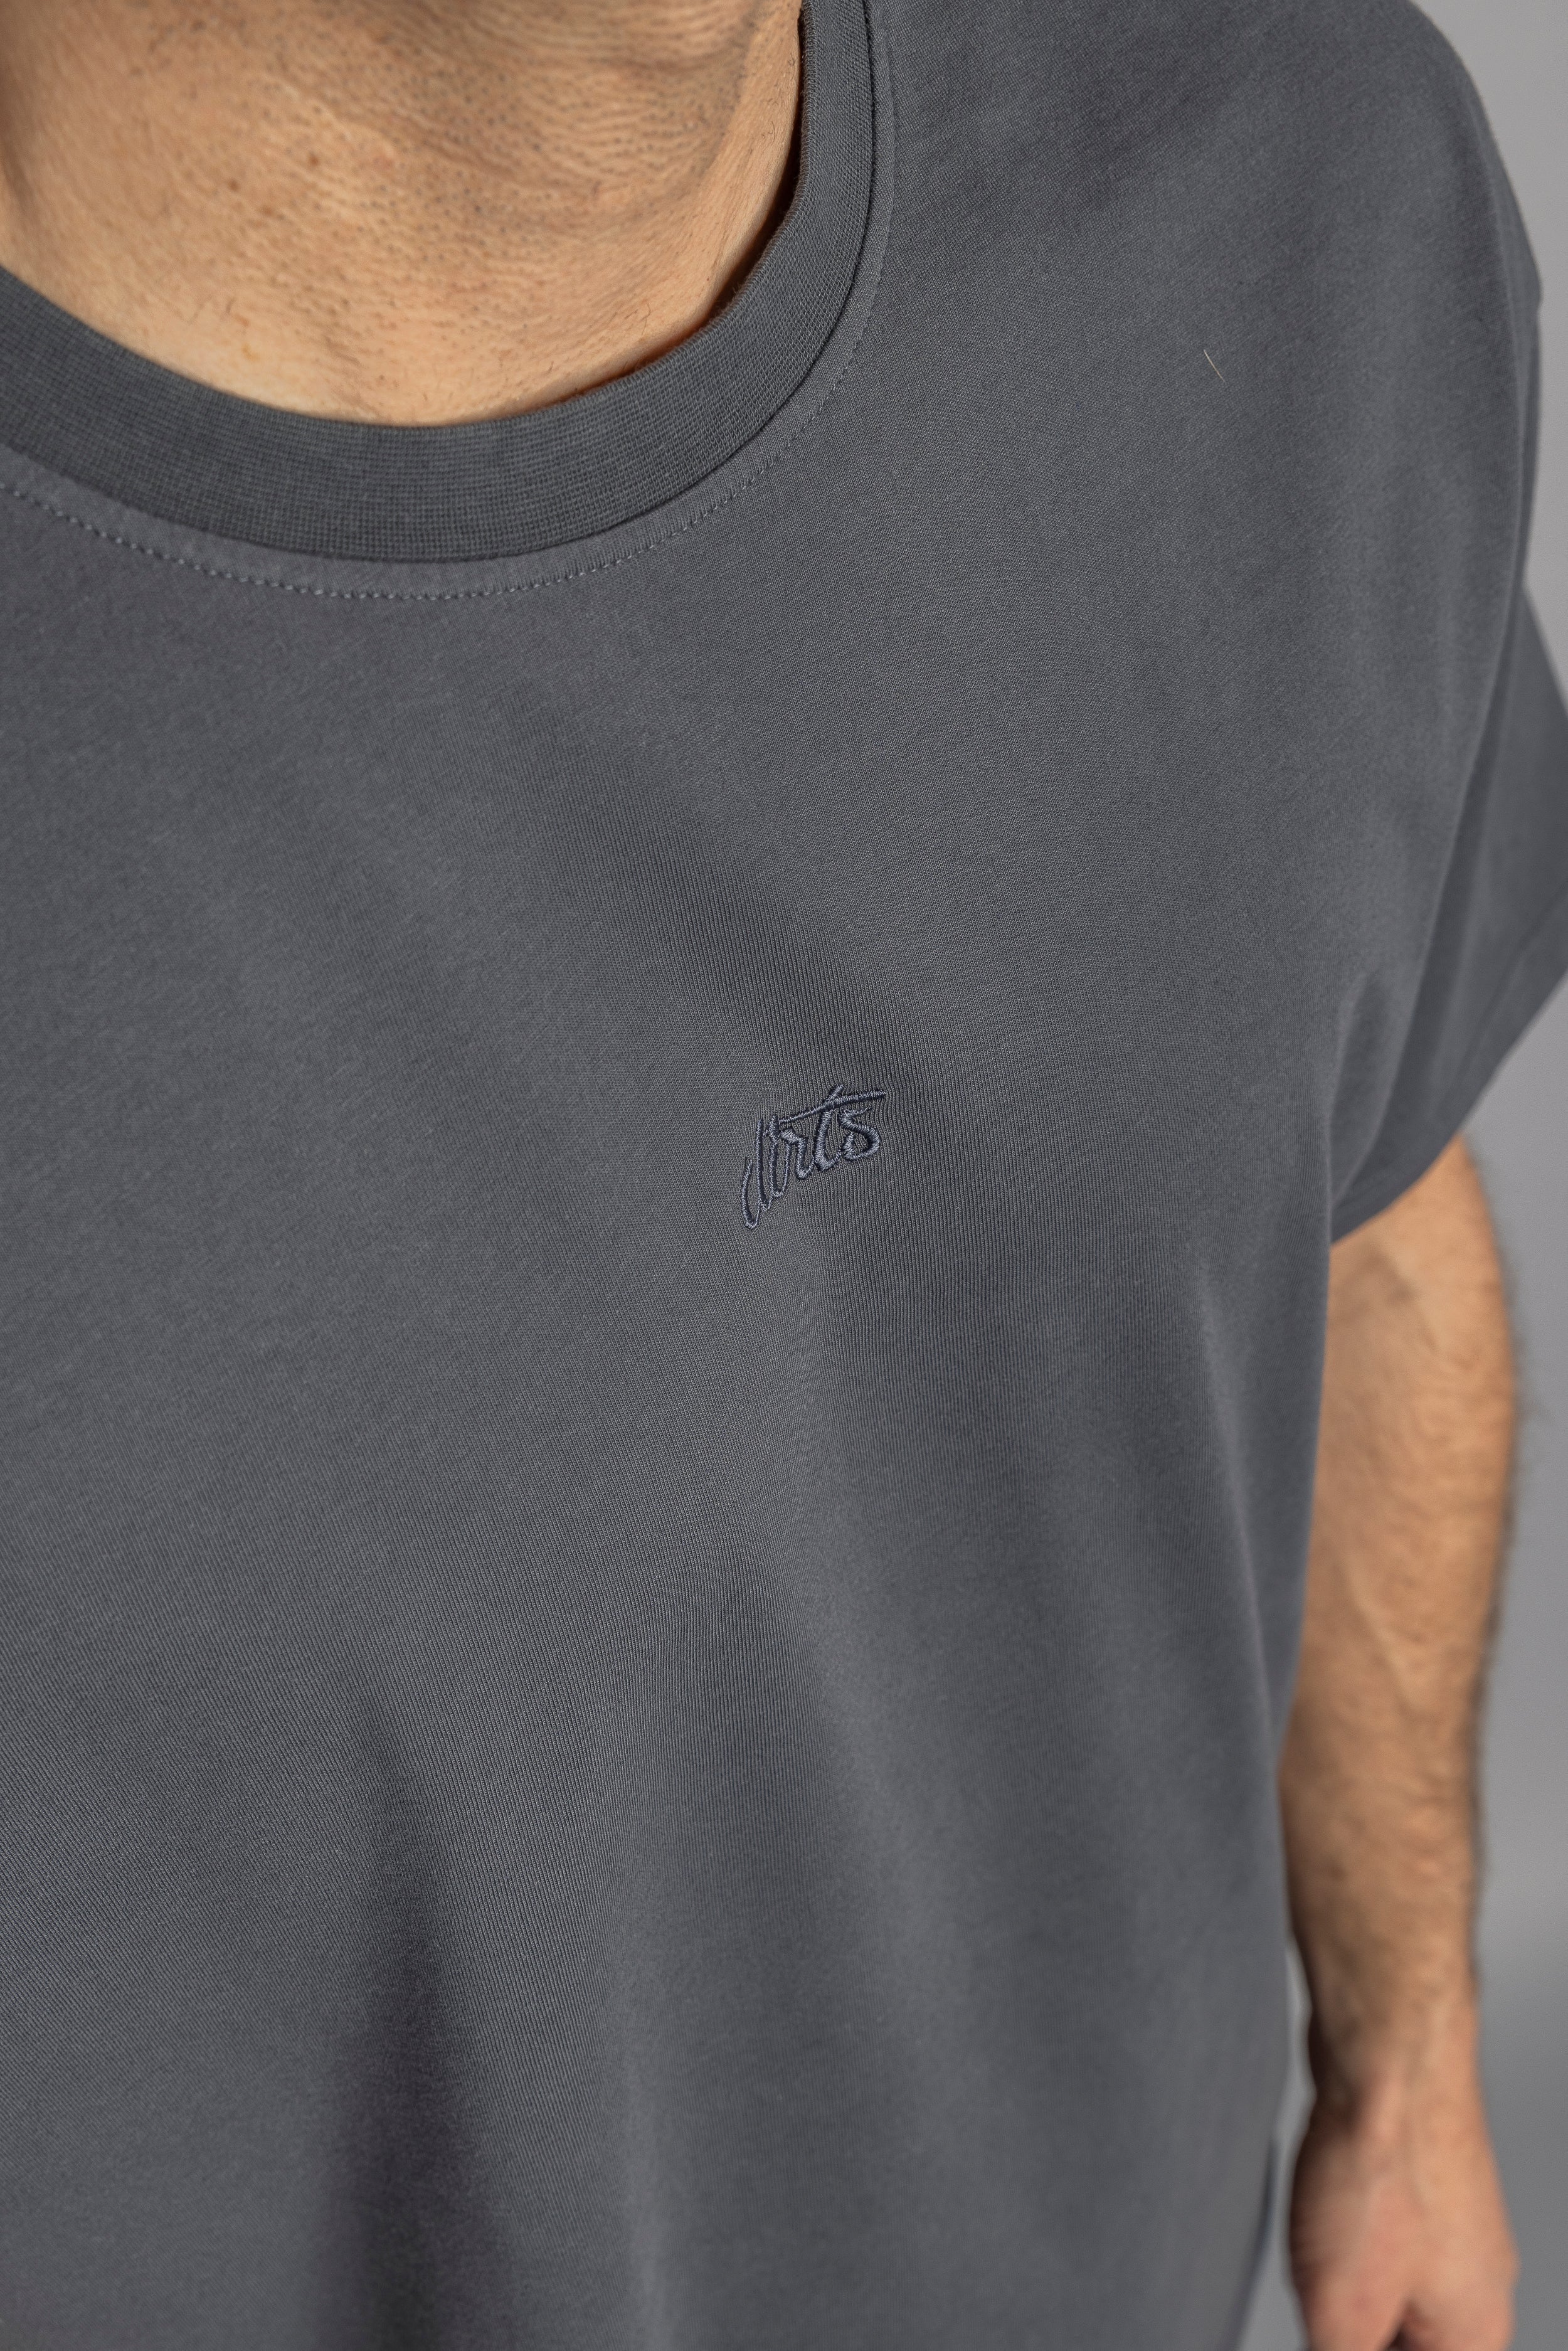 Logo T-shirt oversize gris en coton 100% biologique de DIRTS